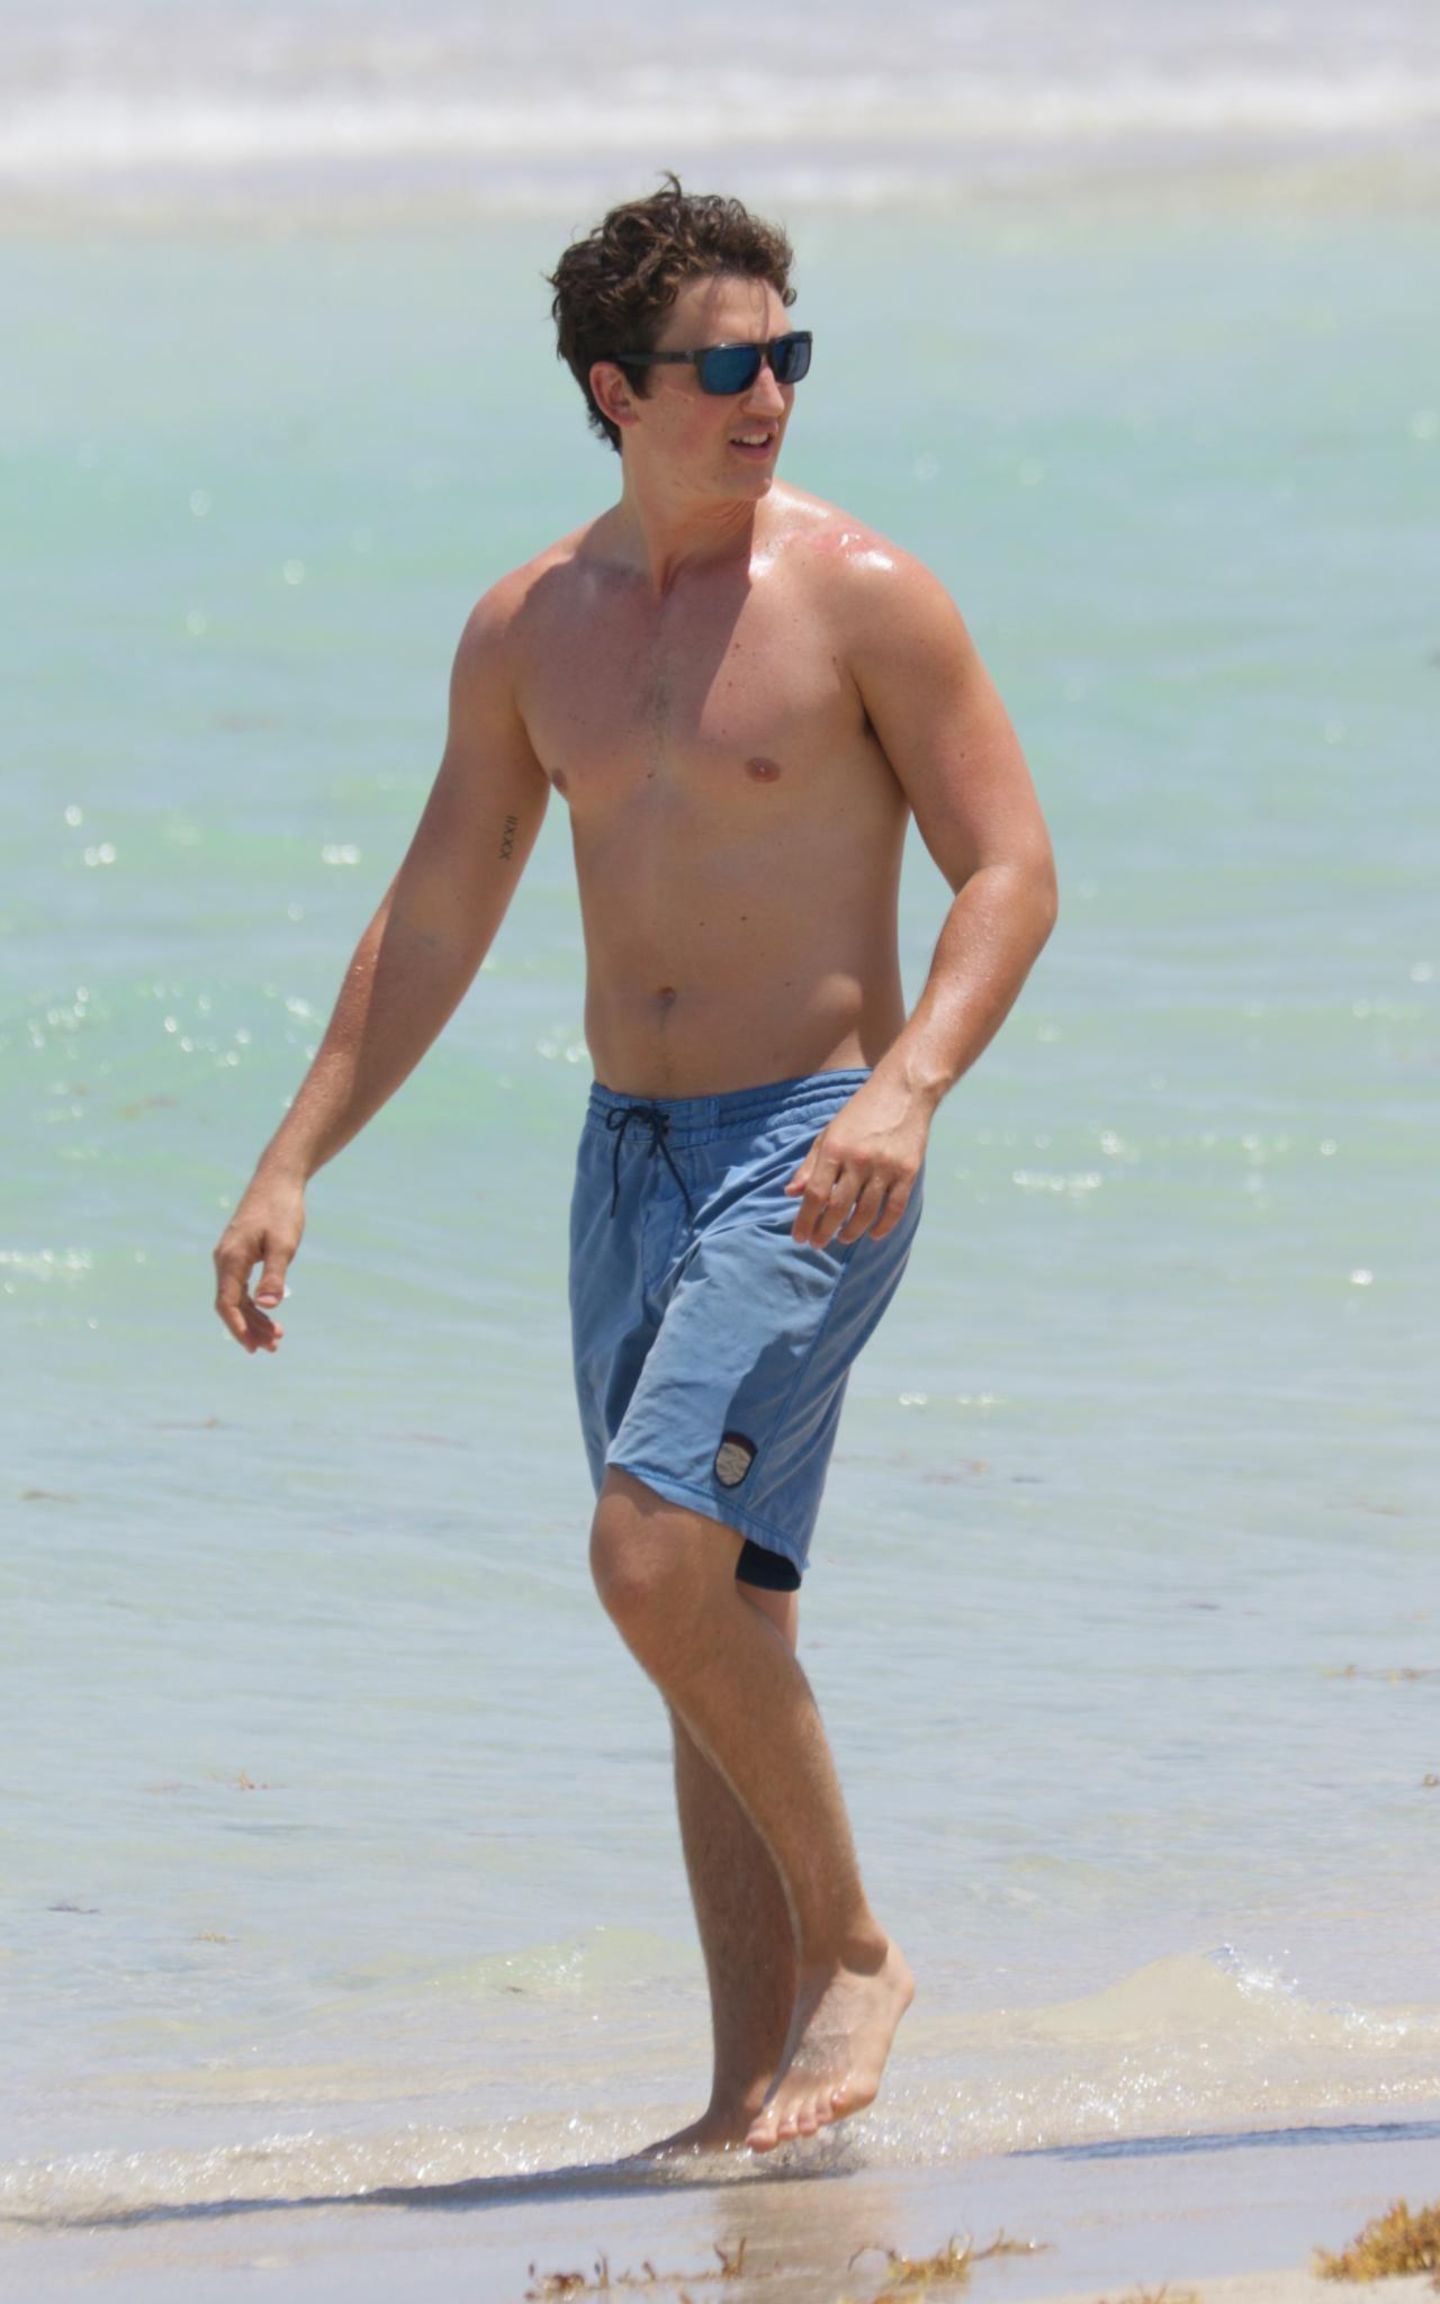 Spätestens mit Filmen wie "Divergent" und "Insurgent" hat es Miles Teller in die A-Riege von Hollywood geschafft. Am Strand von Miami sonnt er seine ansehnlichen 1,83 Meter.